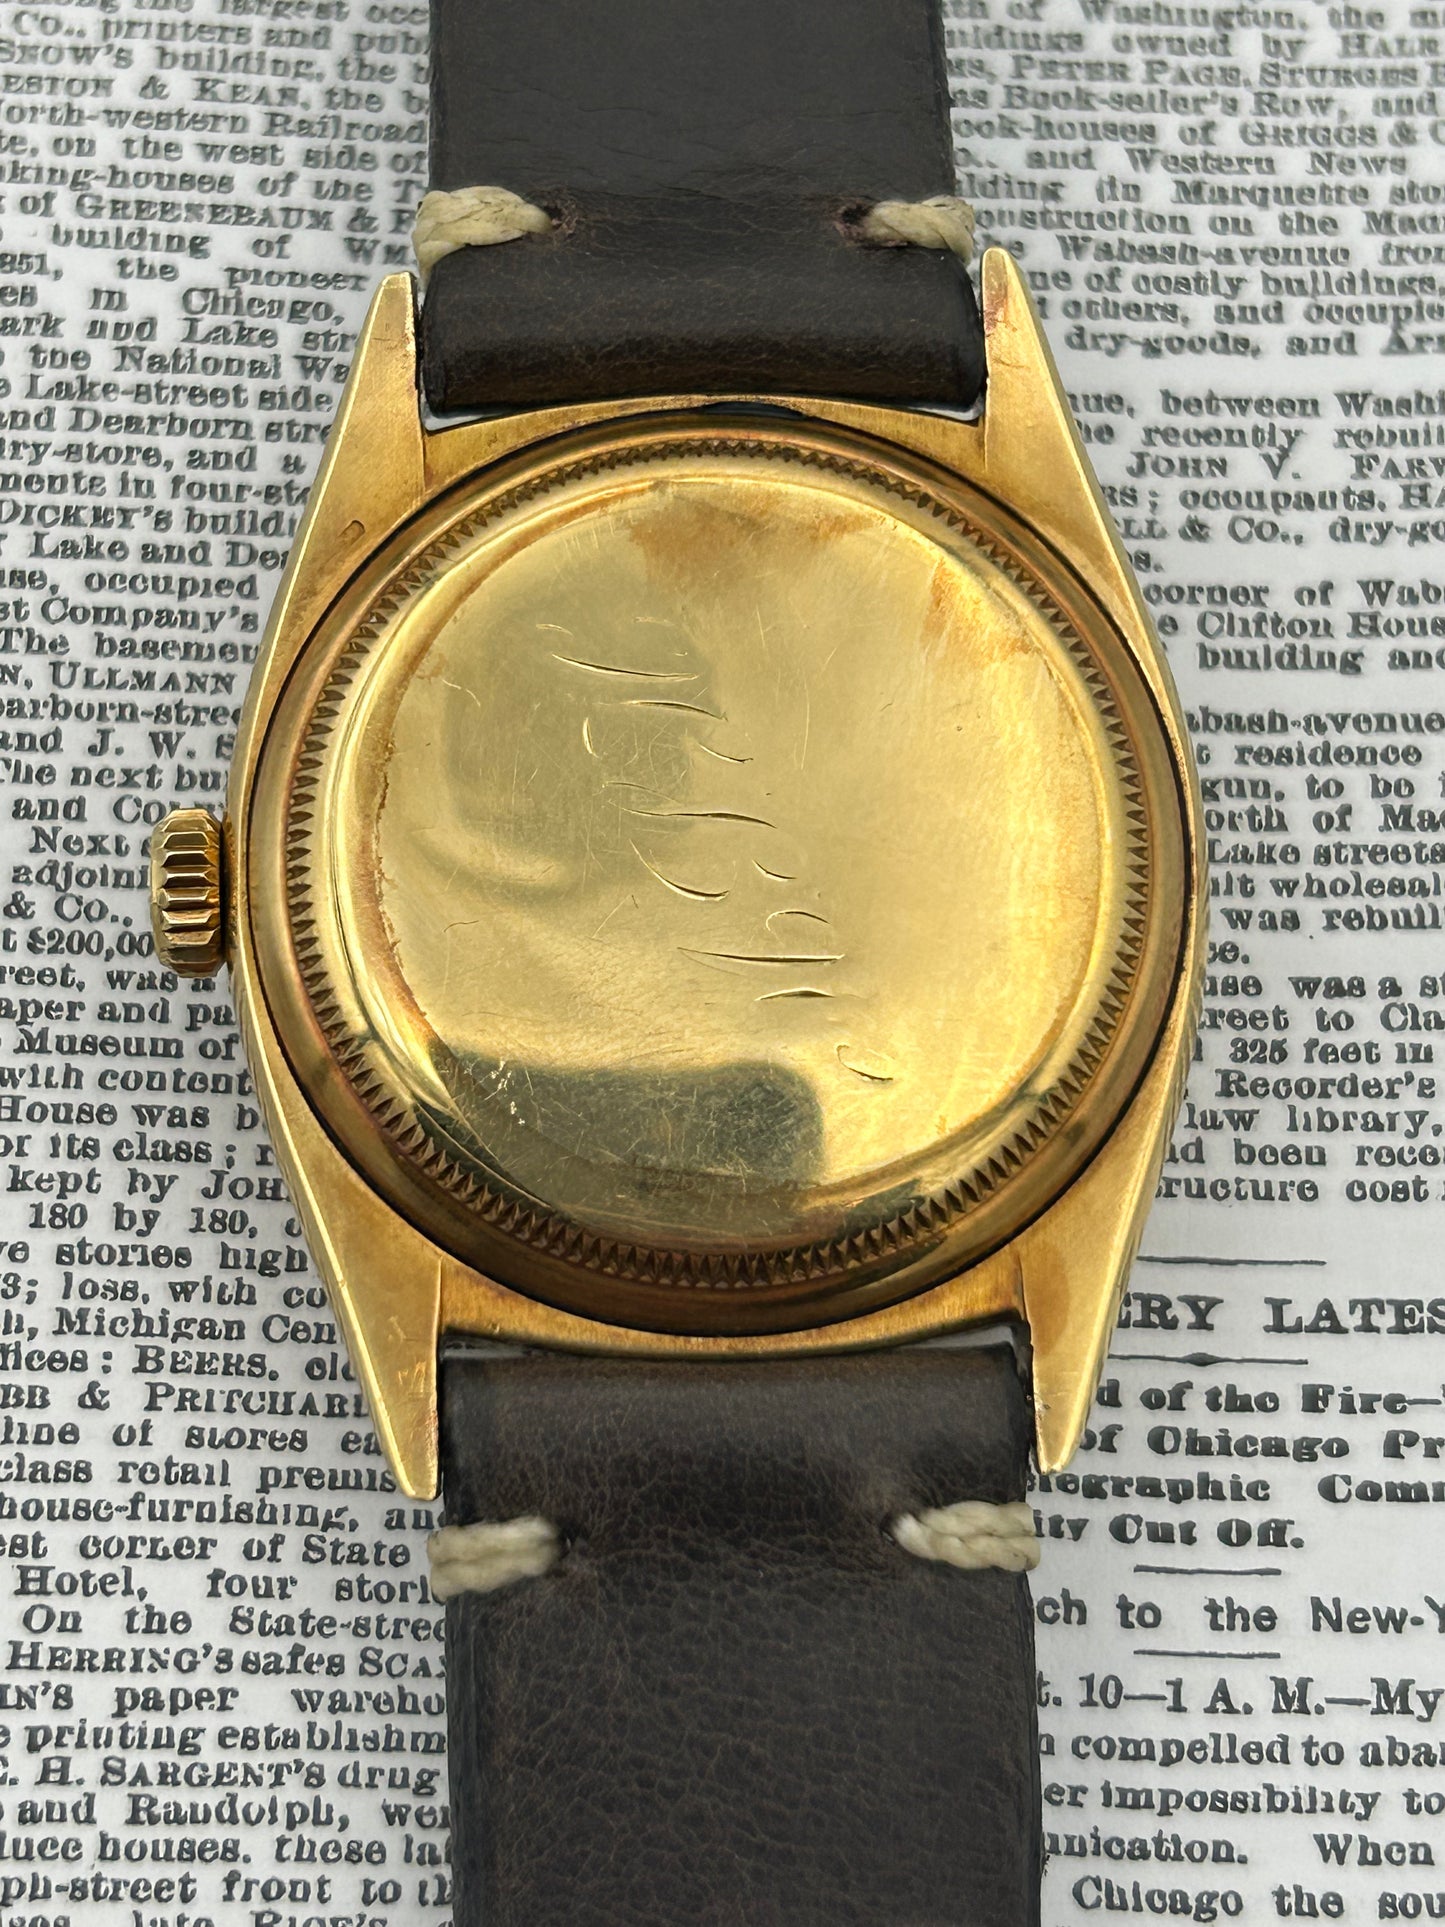 Rolex Ref 6105 - 1952 Red Date